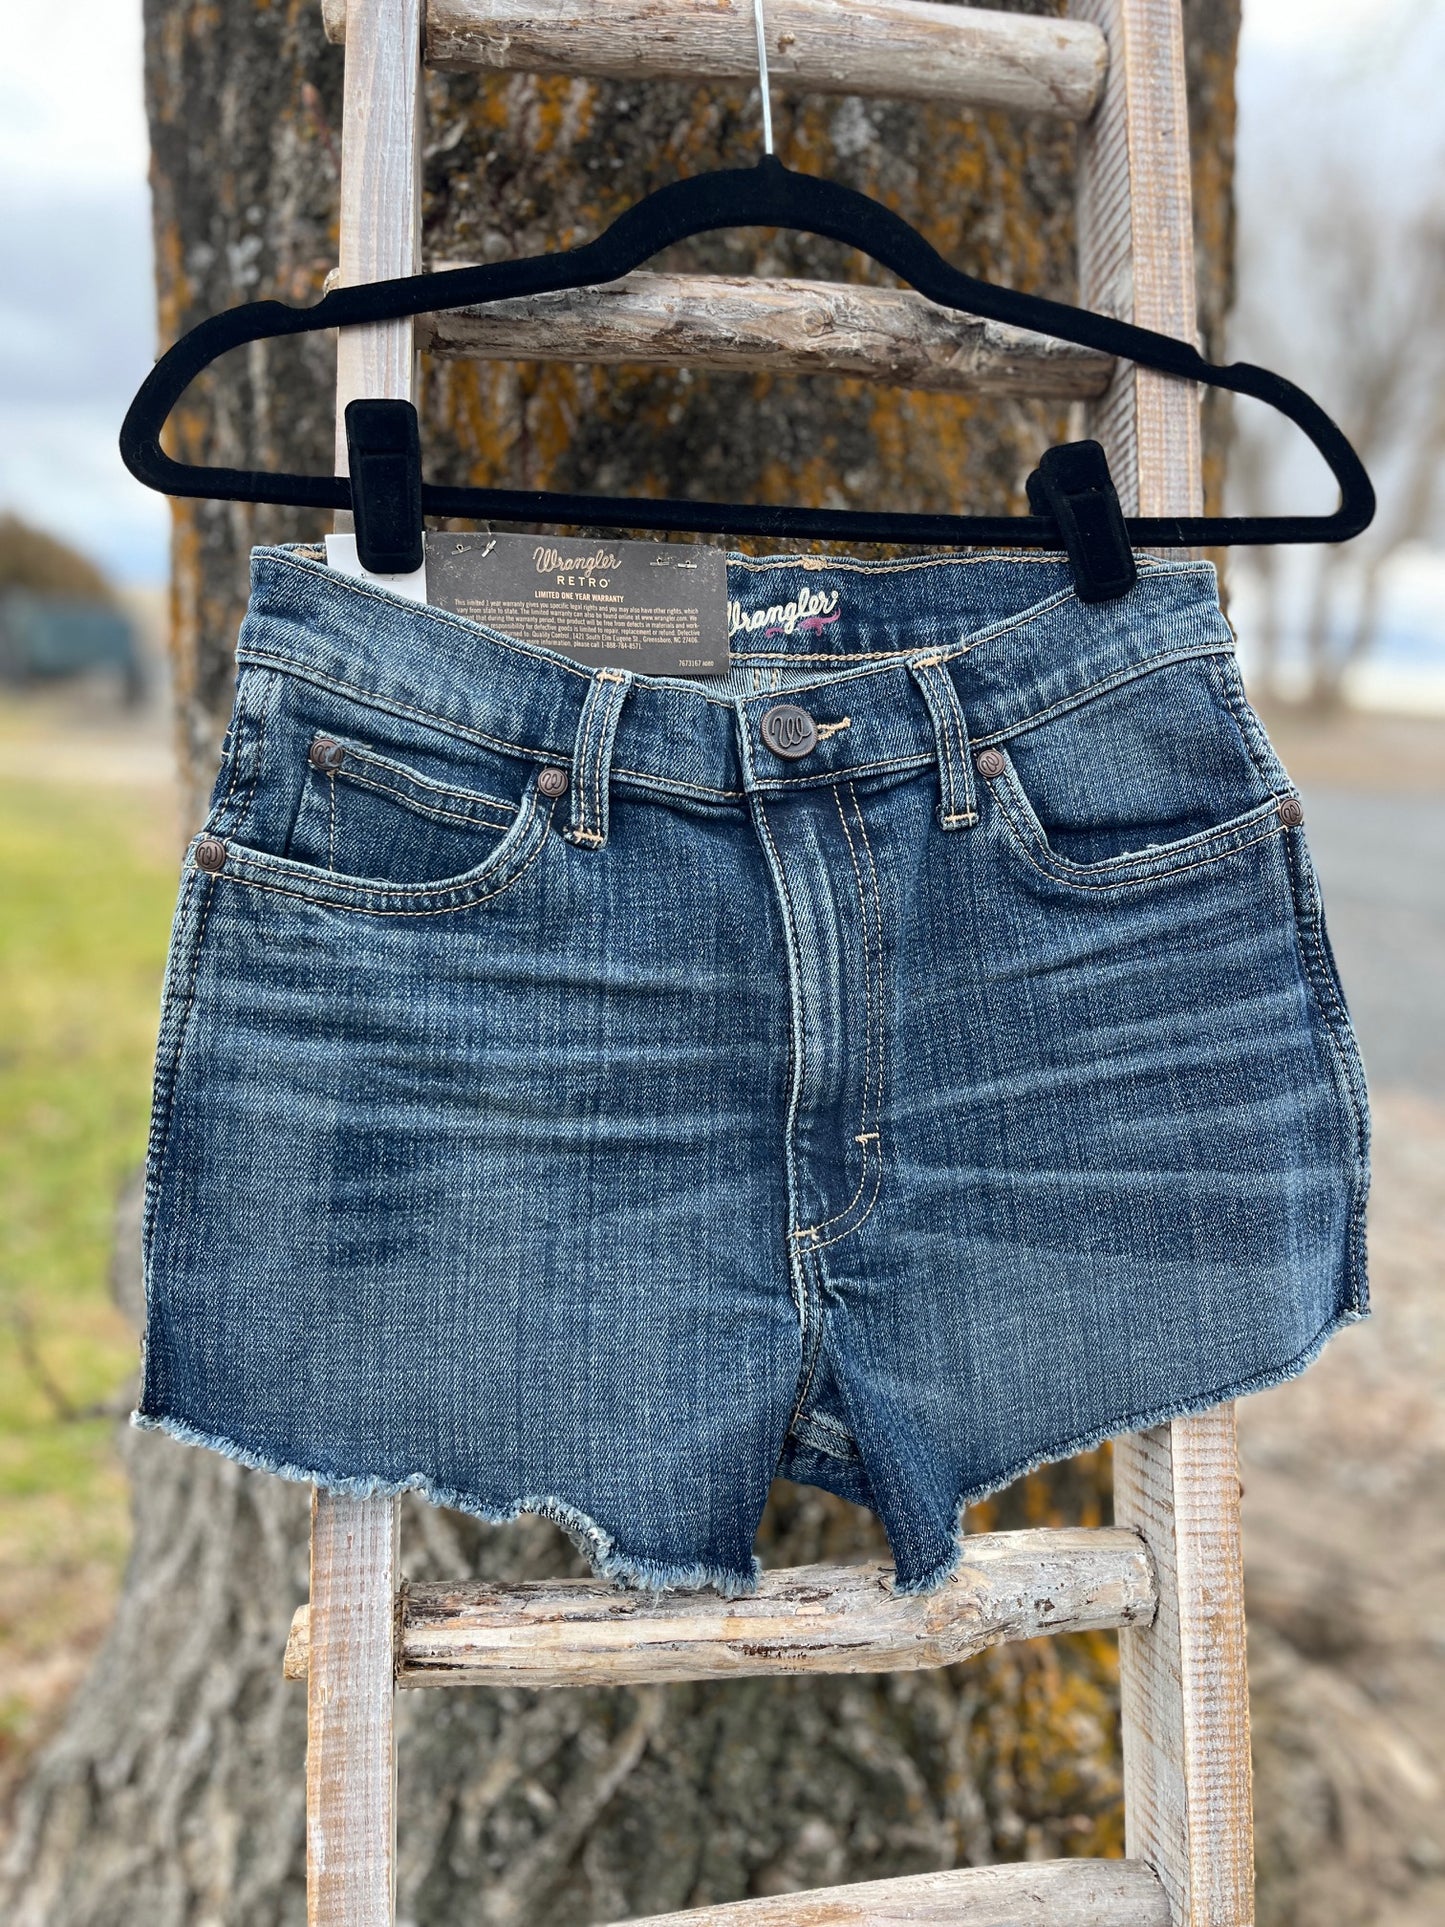 Wrangler Shorts - Size 0/1